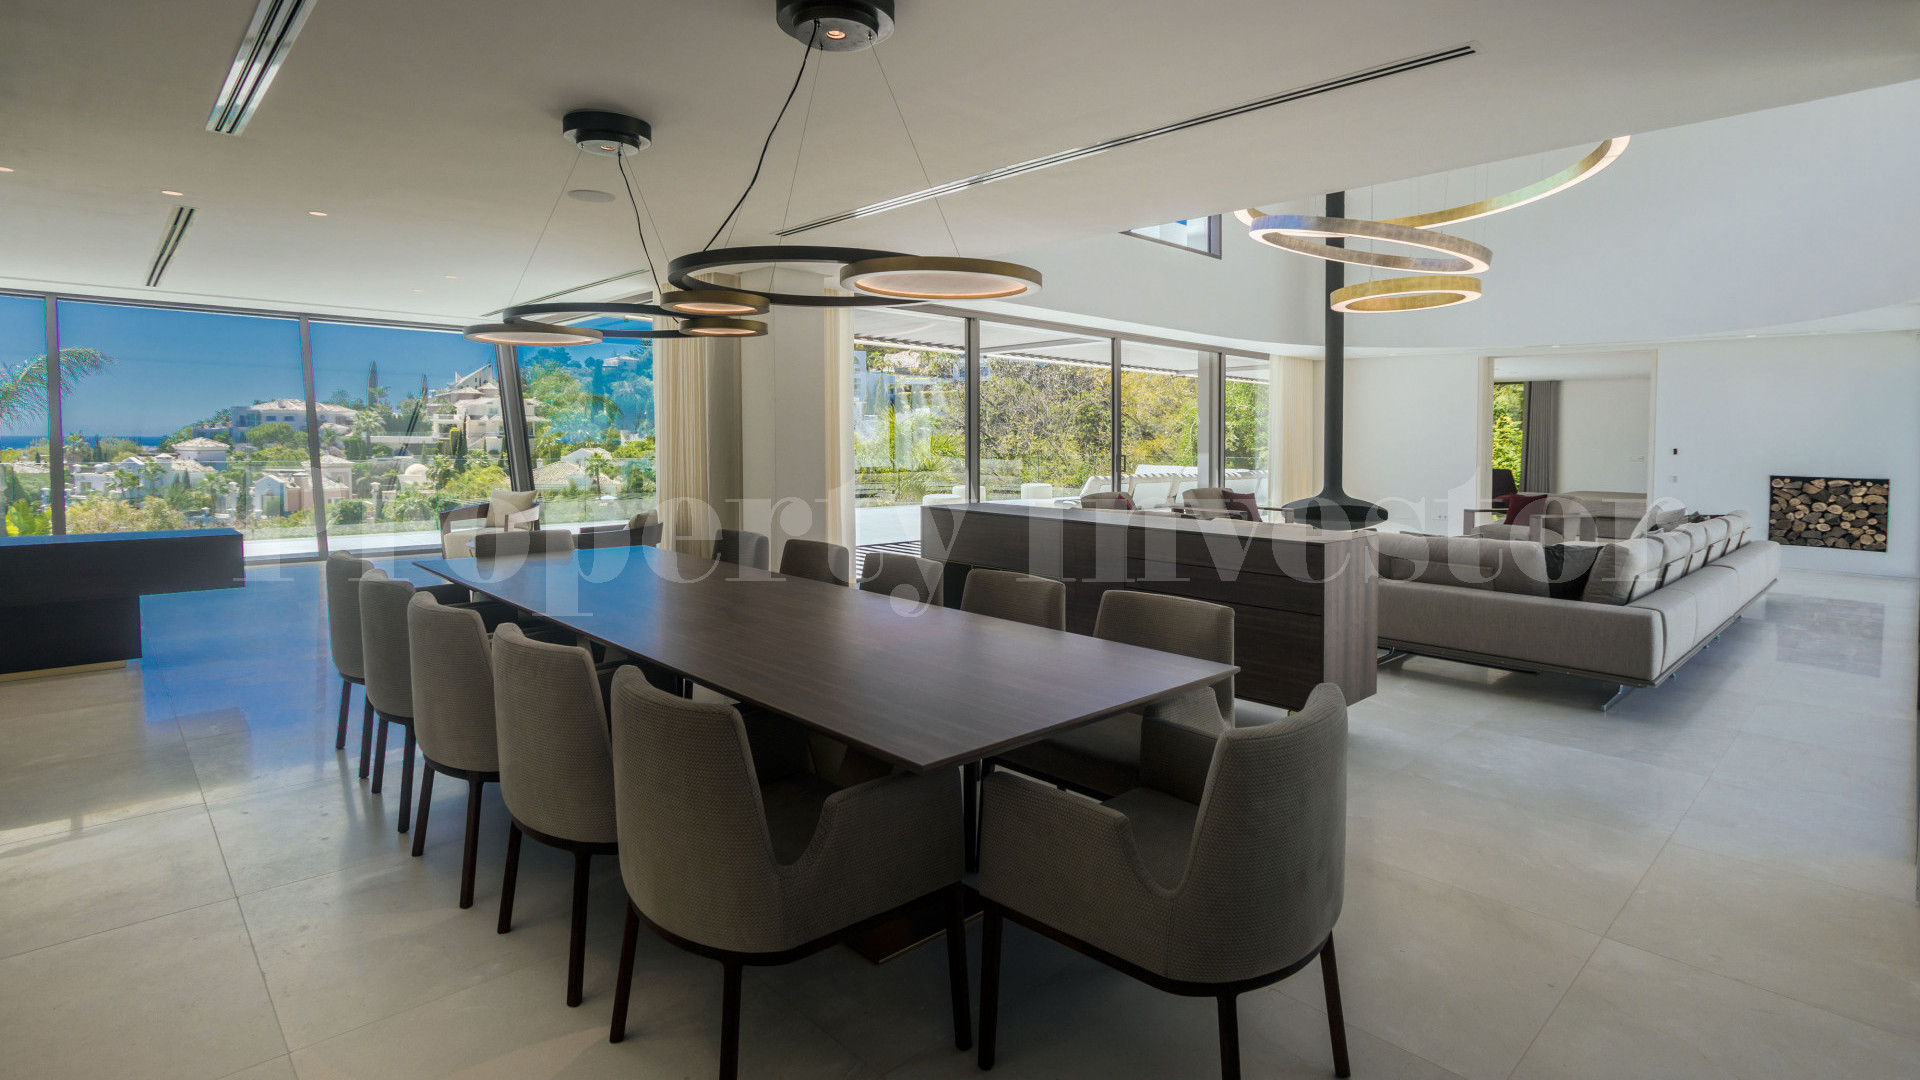 Fabulous 6 Bedroom Luxury Designer Villa Perfect for Entertaining for Sale in Benahavis, Spain